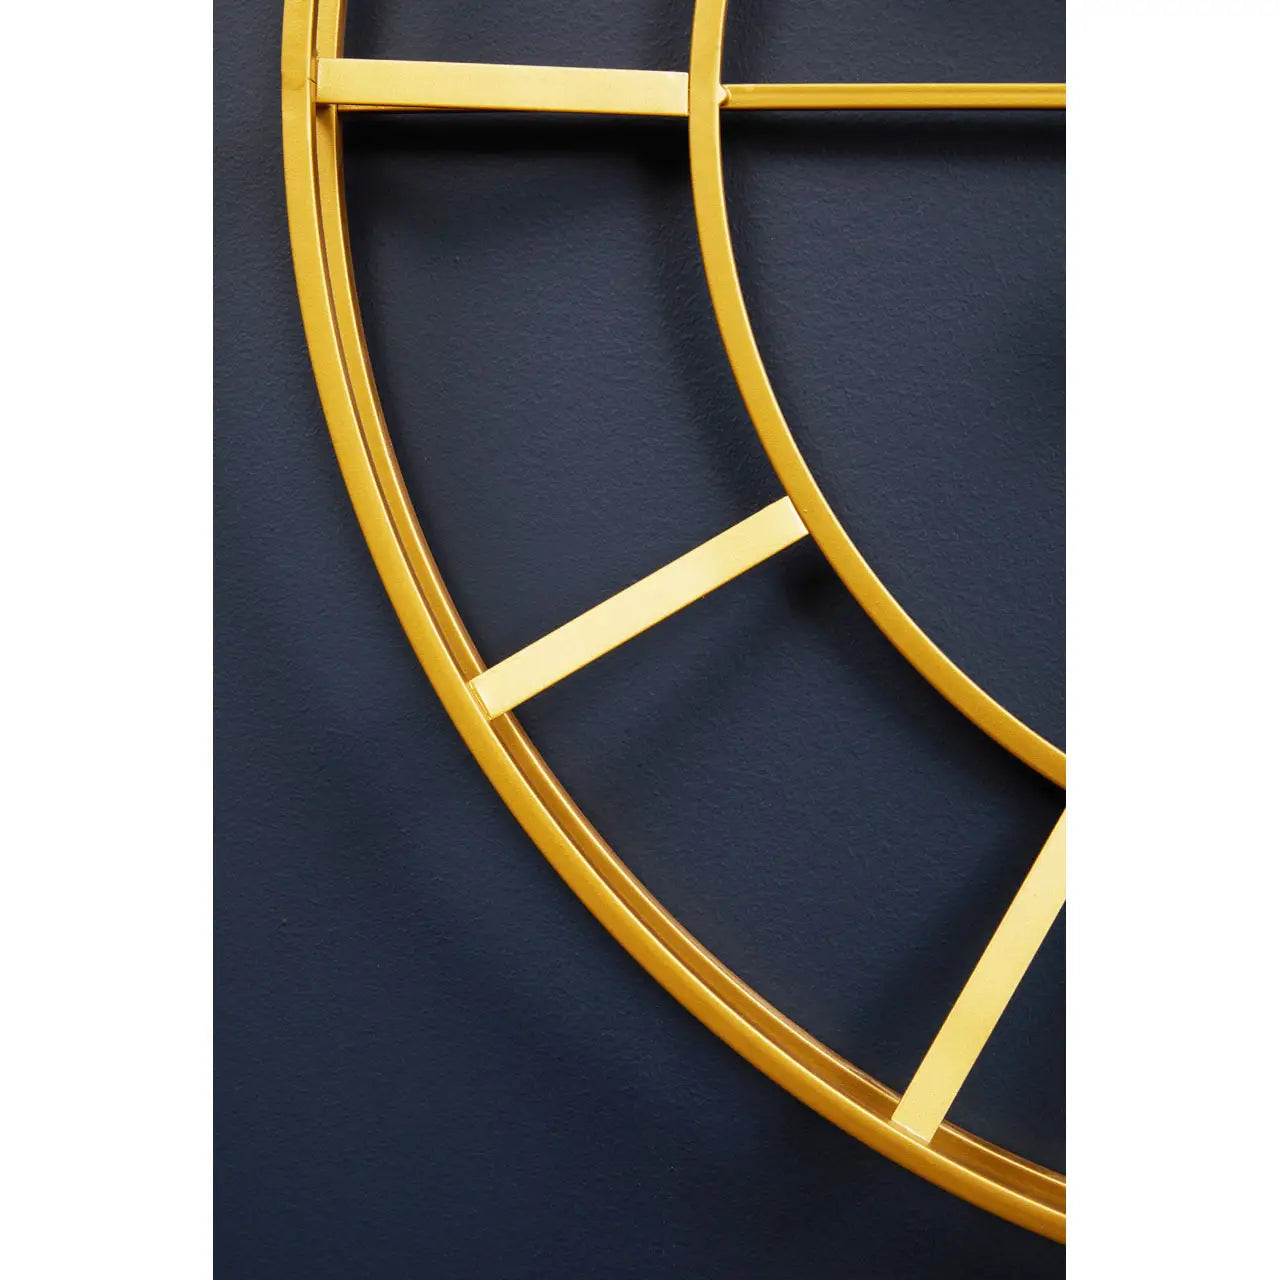 Kent Large Gold Frame & Black Detail Wall Clock